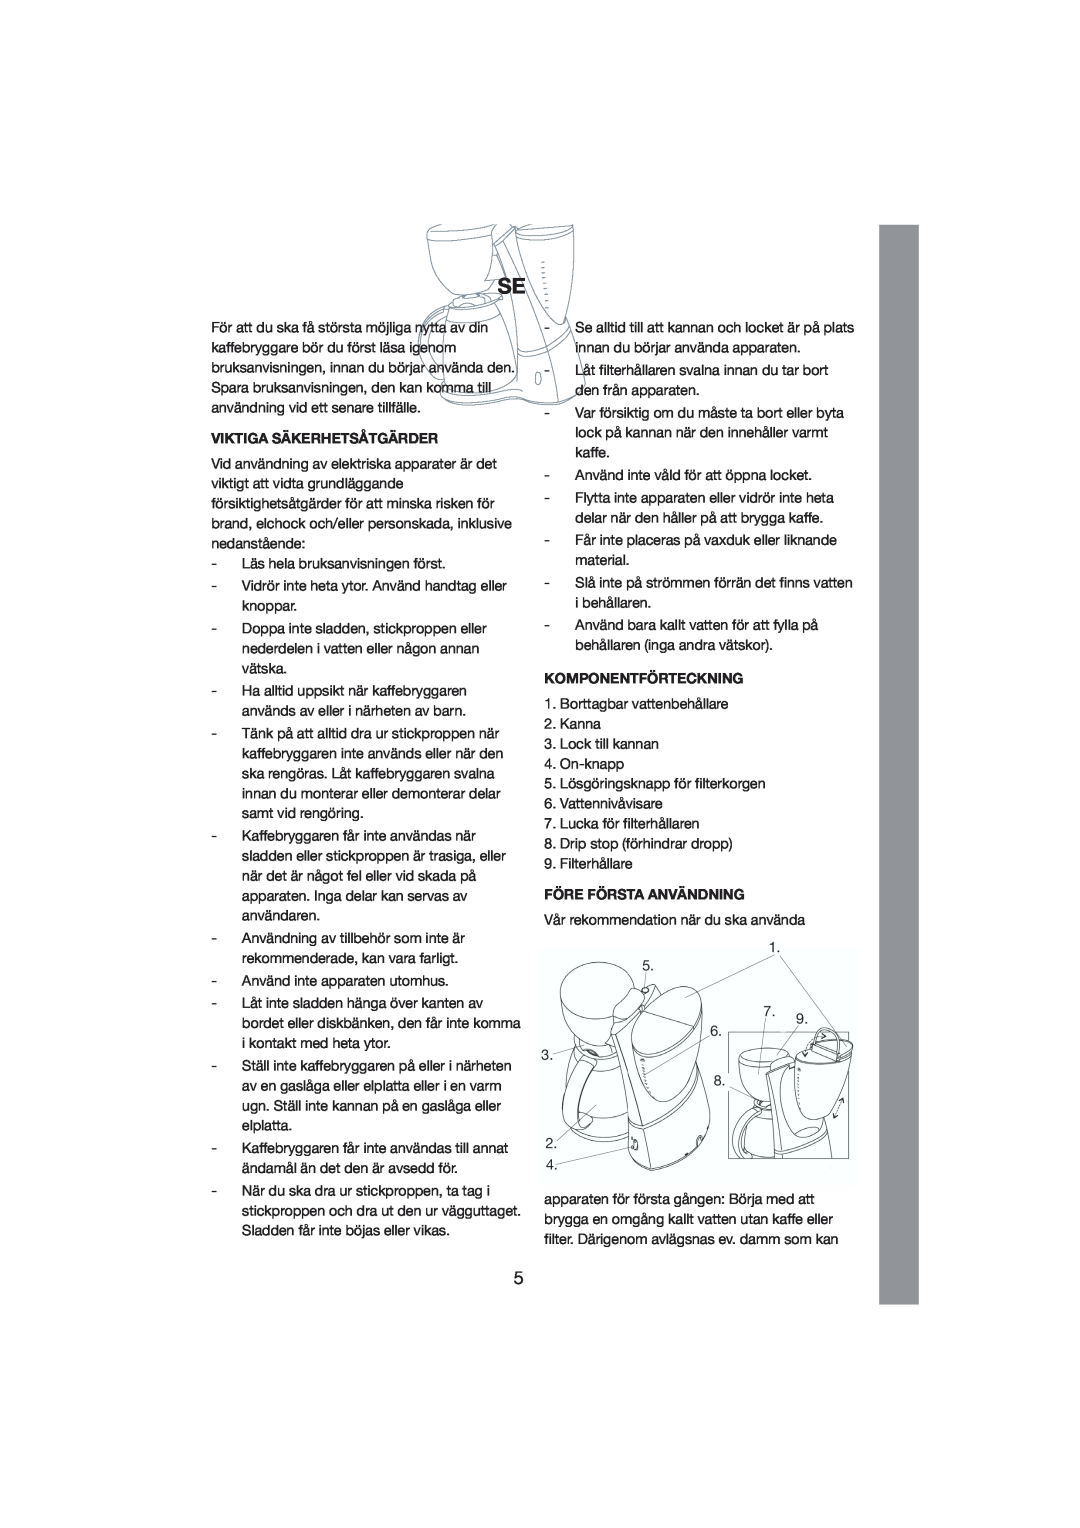 Melissa 245-022 manual Viktiga Säkerhetsåtgärder, Komponentförteckning, Före Första Användning 